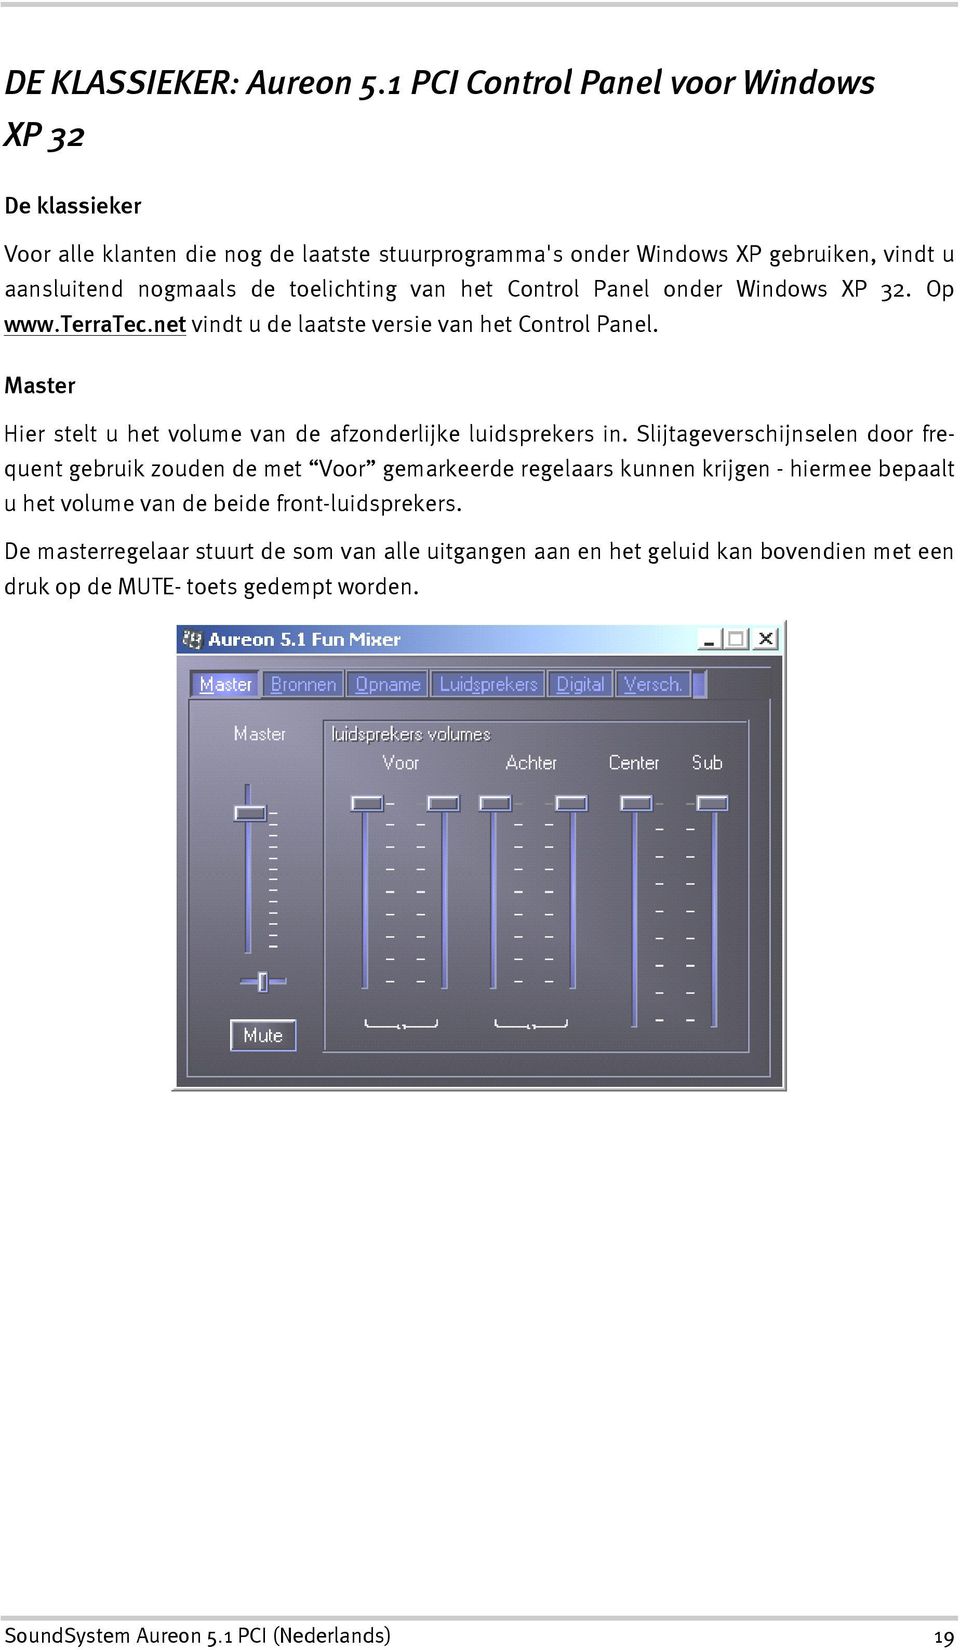 van het Control Panel onder Windows XP 32. Op www.terratec.net vindt u de laatste versie van het Control Panel. Master Hier stelt u het volume van de afzonderlijke luidsprekers in.